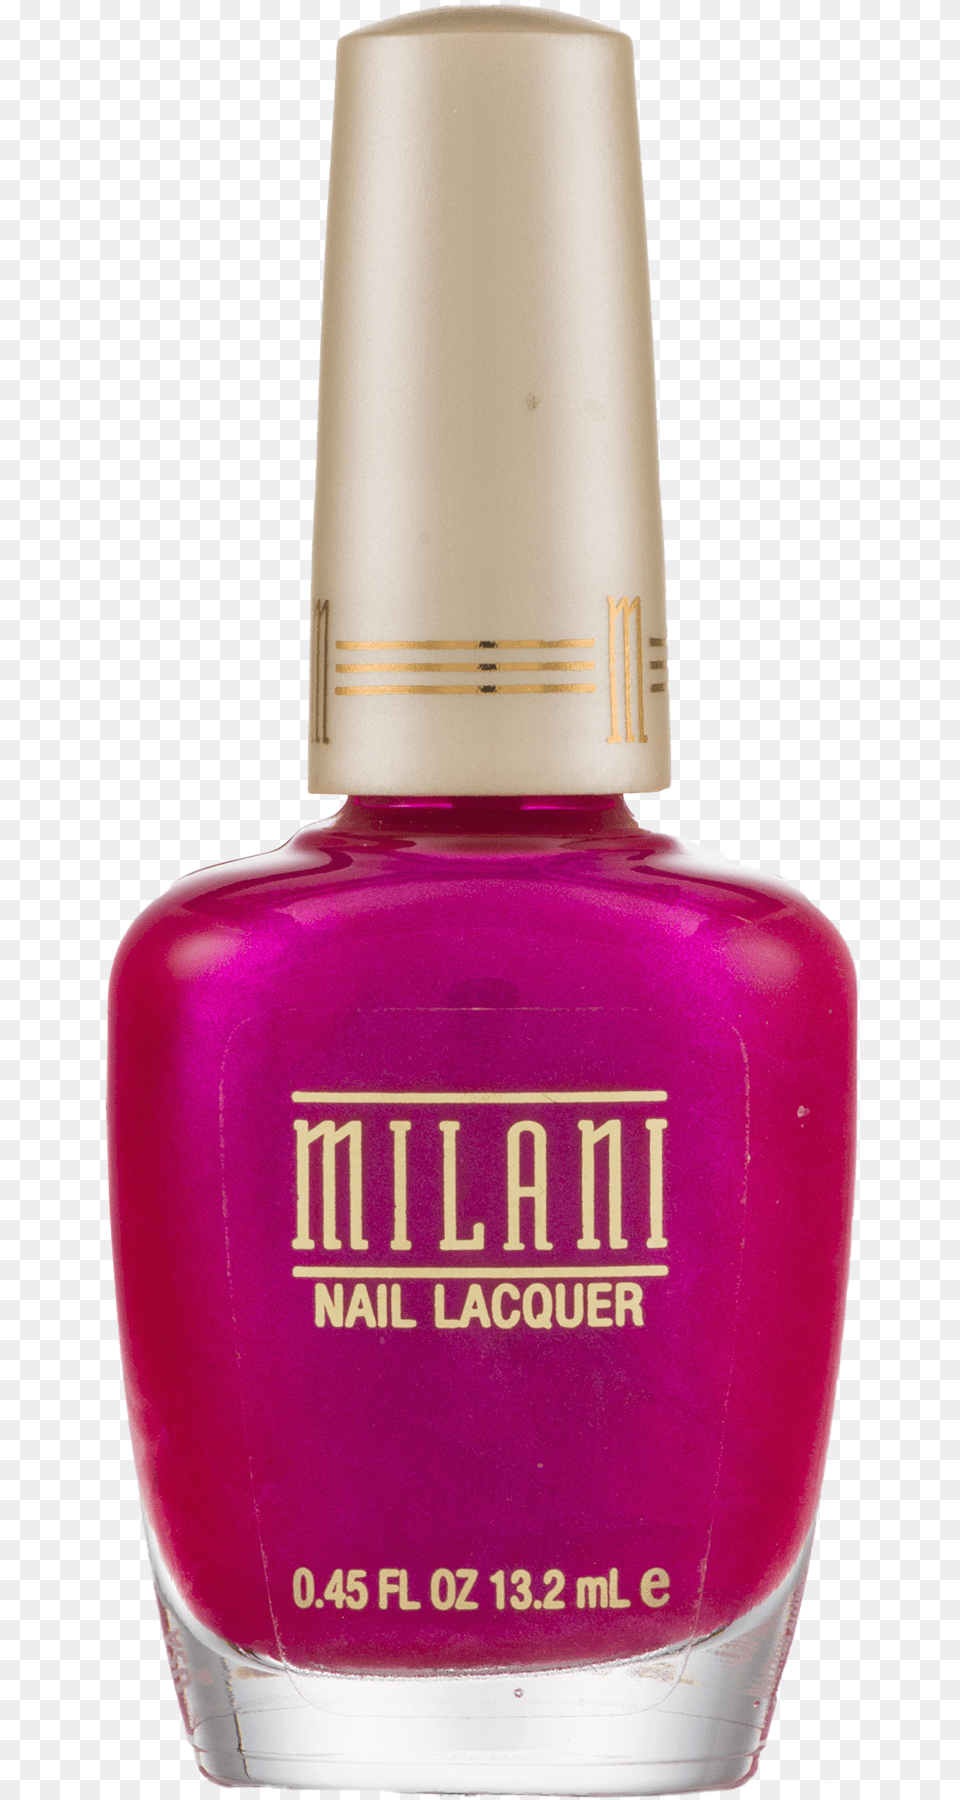 Milani Nail Polish, Cosmetics, Bottle, Perfume, Nail Polish Png Image